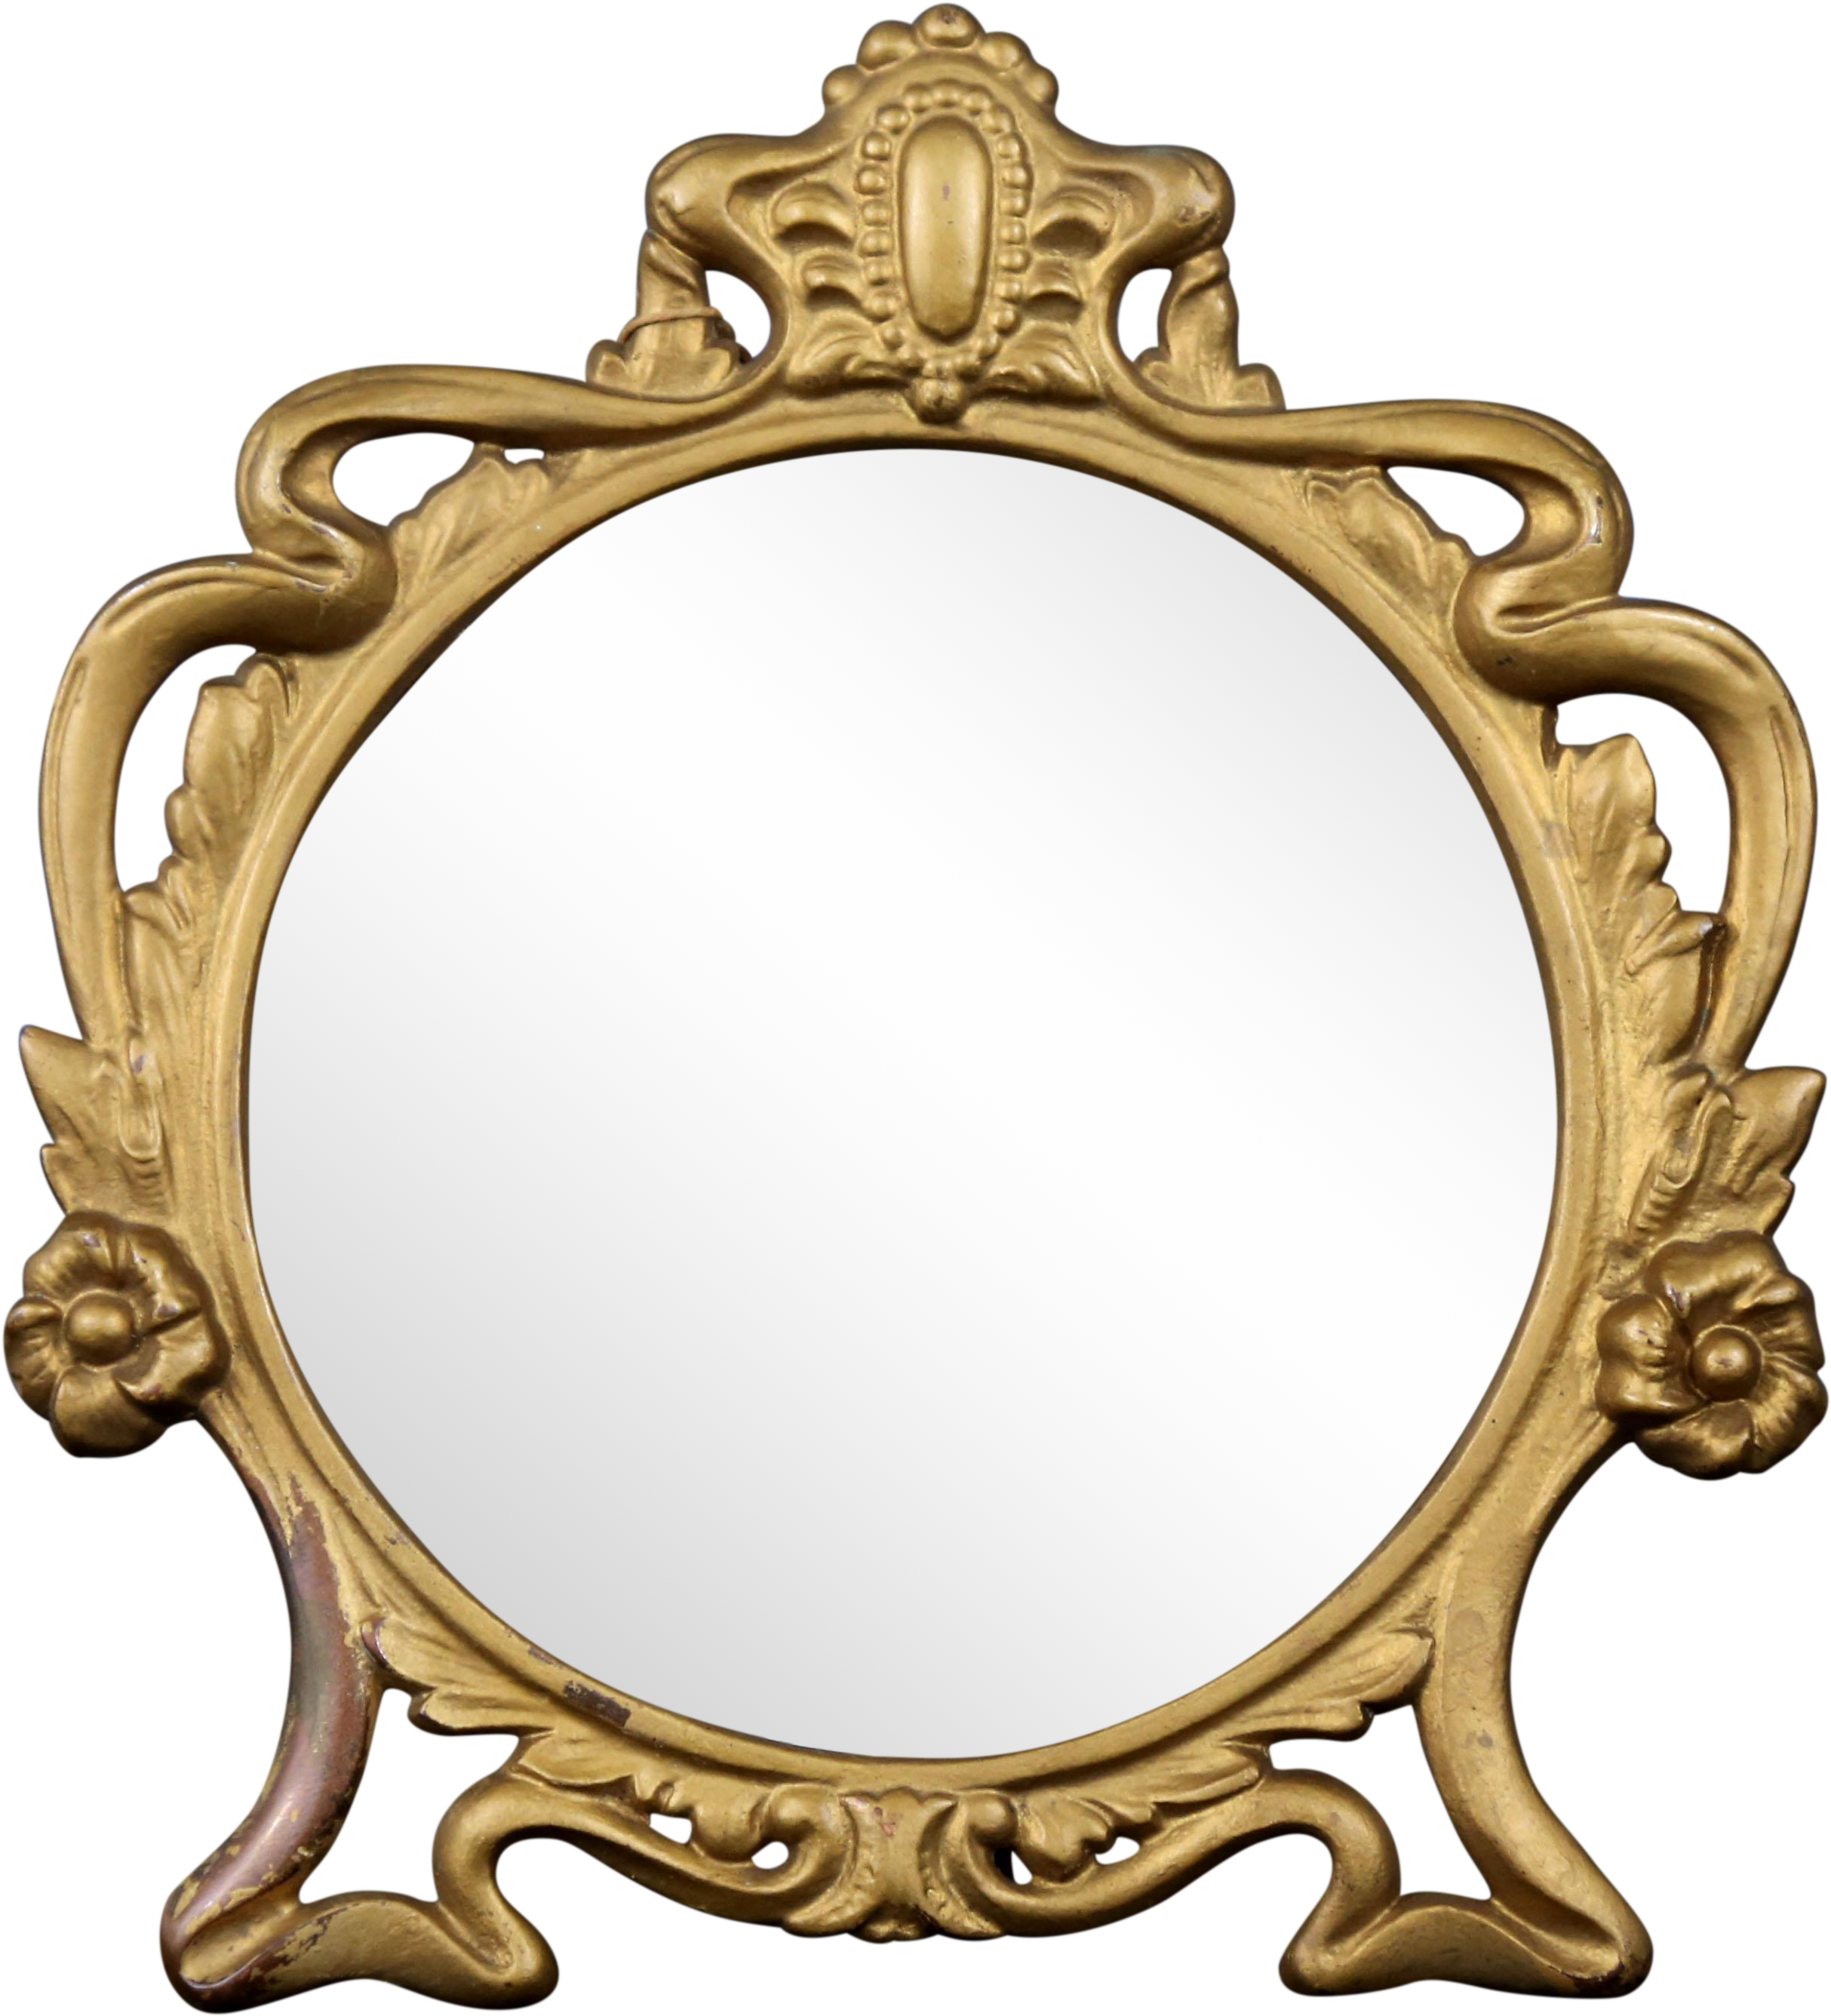 Transparent Magic Mirror Clipart - Magic mirror symbol design from